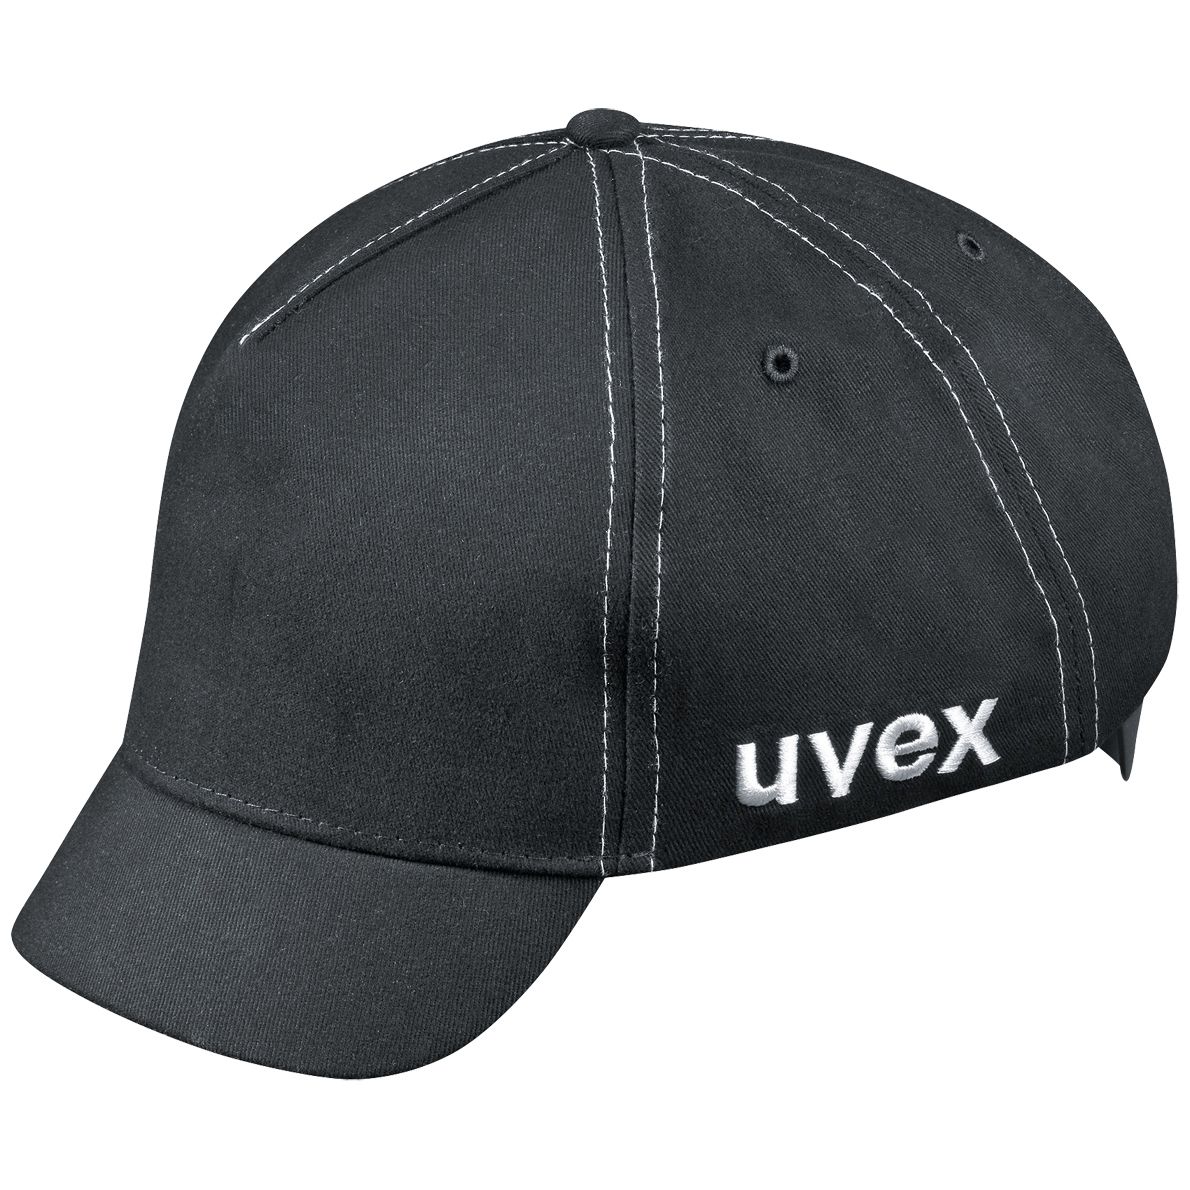 uvex u-cap sport Anstoßkappe - Schutzkappe mit kurzem Schirm - für Bau & Industrie - EN 812 - Schwarz - 55 bis 59 cm